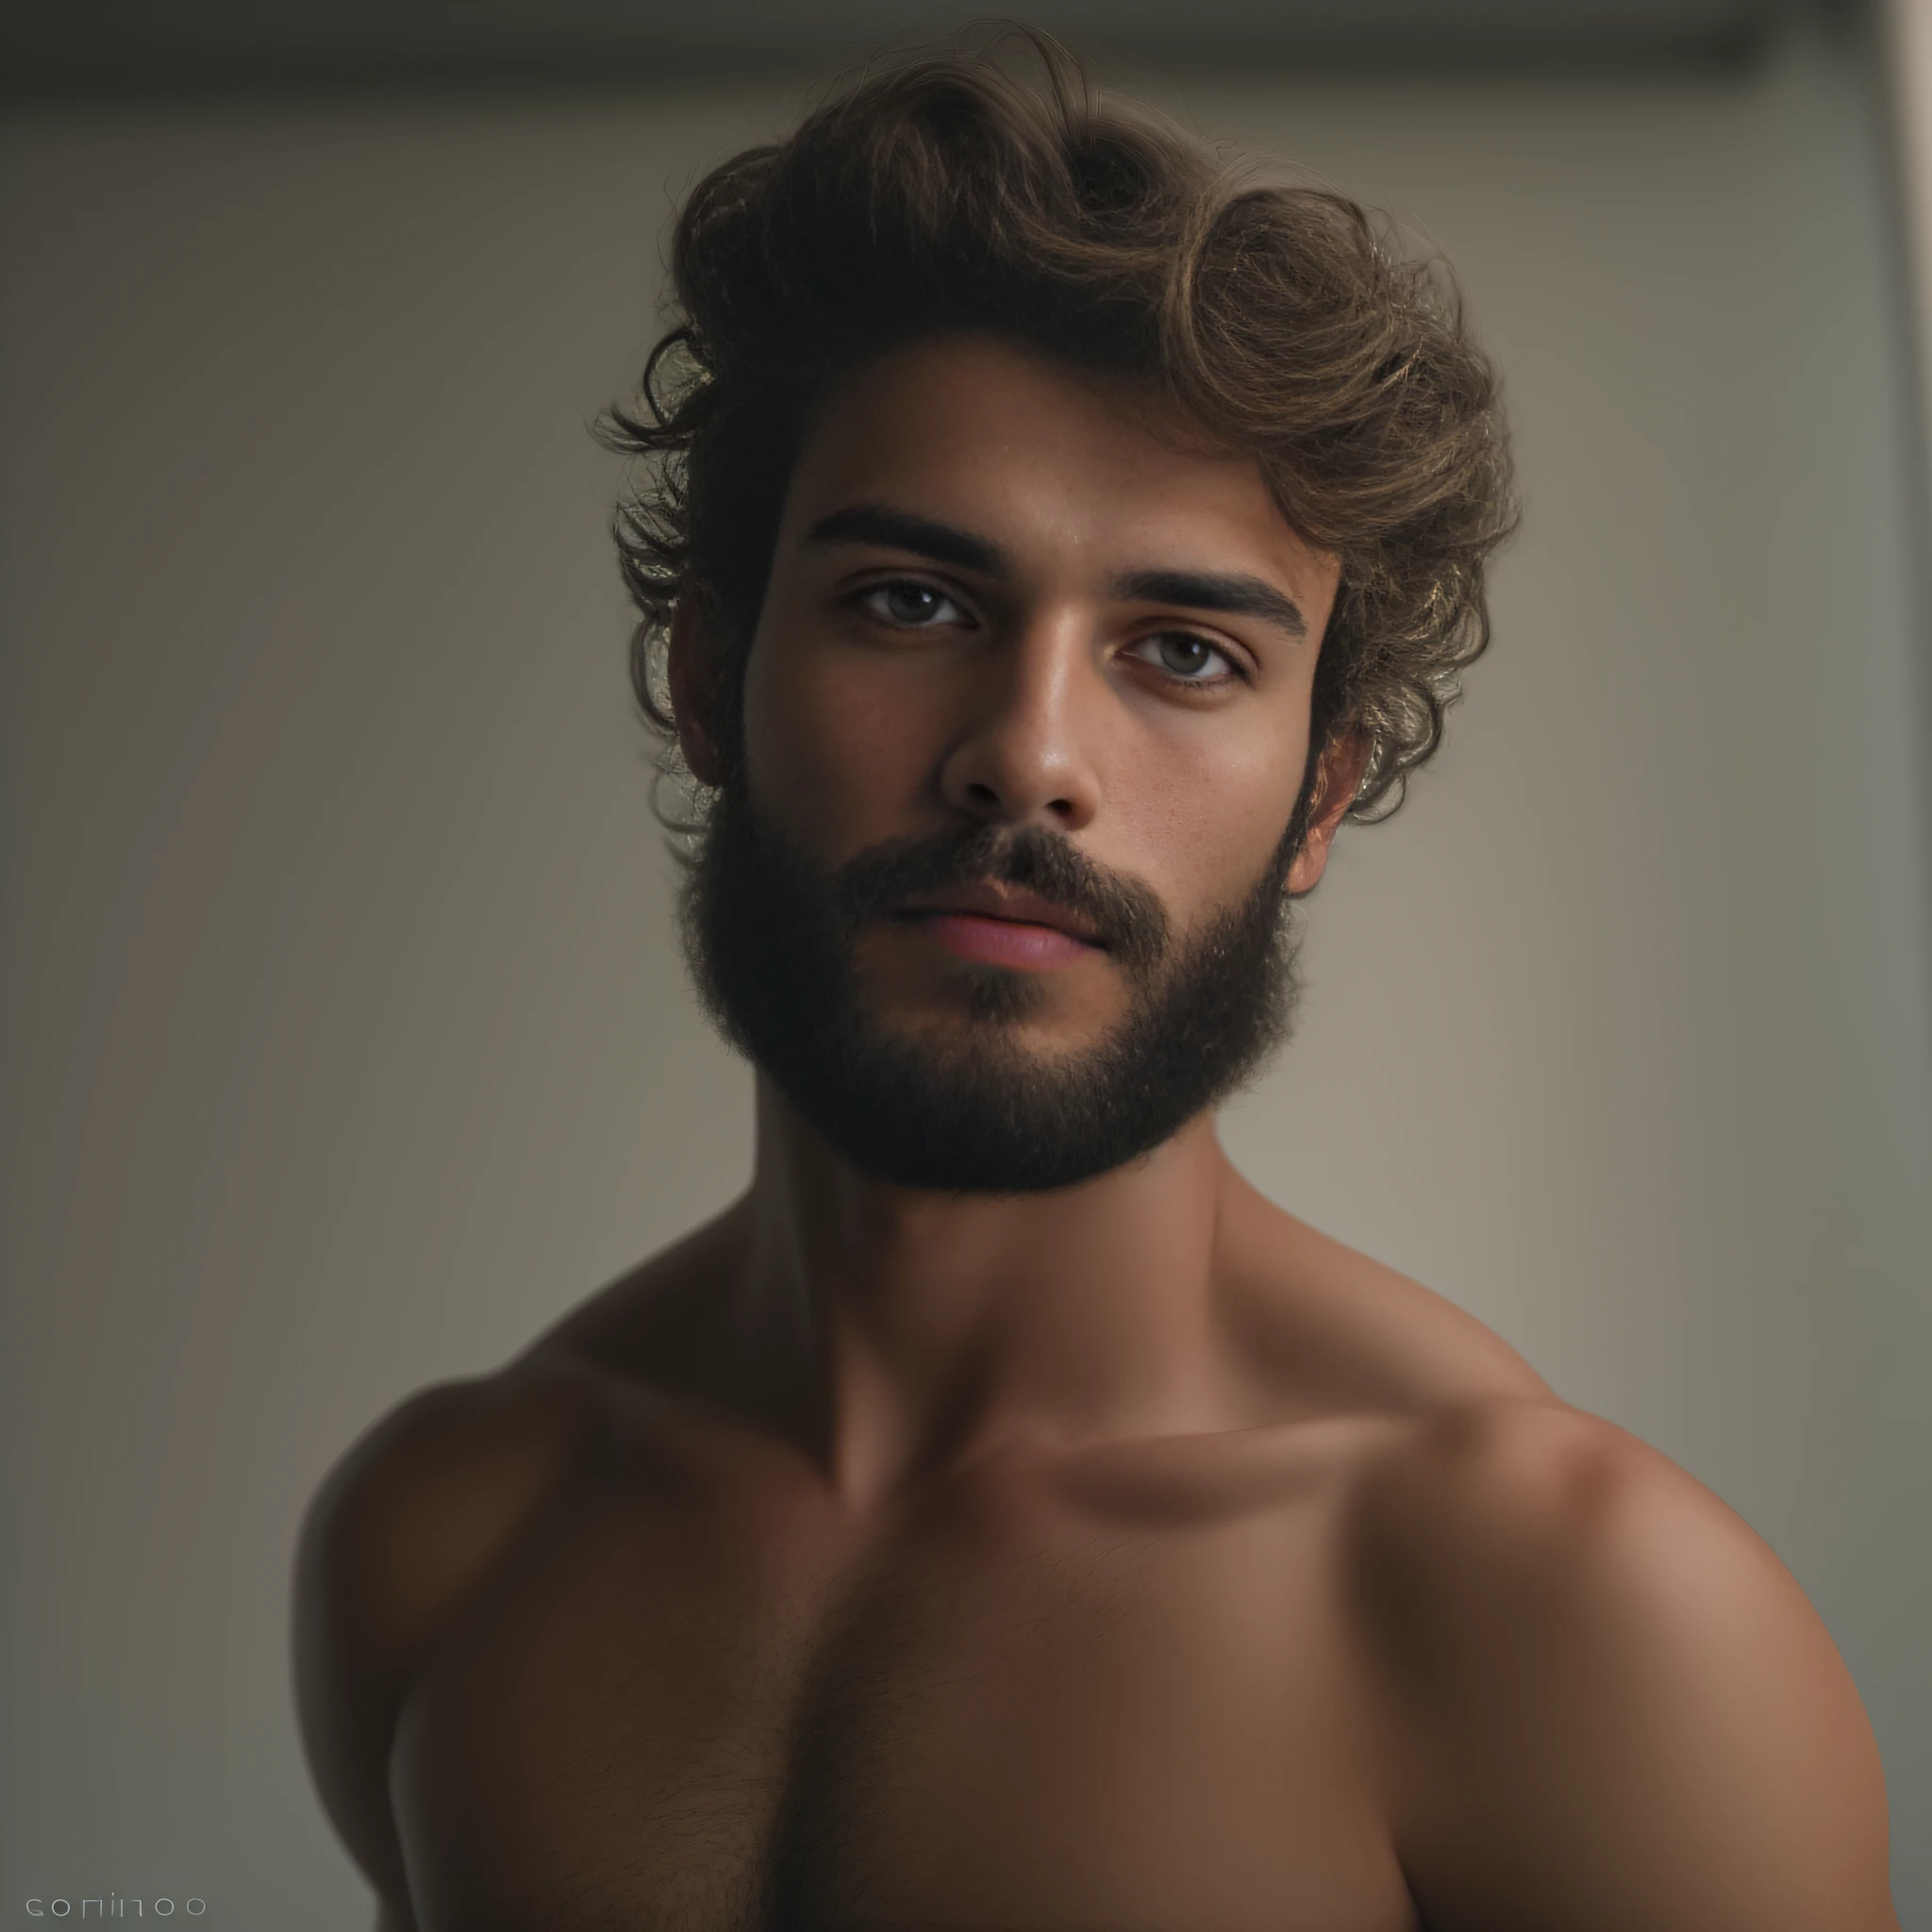 Un hombre de 23 años de los Países Bajos, masculino, barbado, barba clave, modelo, cuerpo entero, muy bonito, mirando a la camara, imagen detallada, uhd, 8k, bien iluminado, grano de película, iluminación perfecta